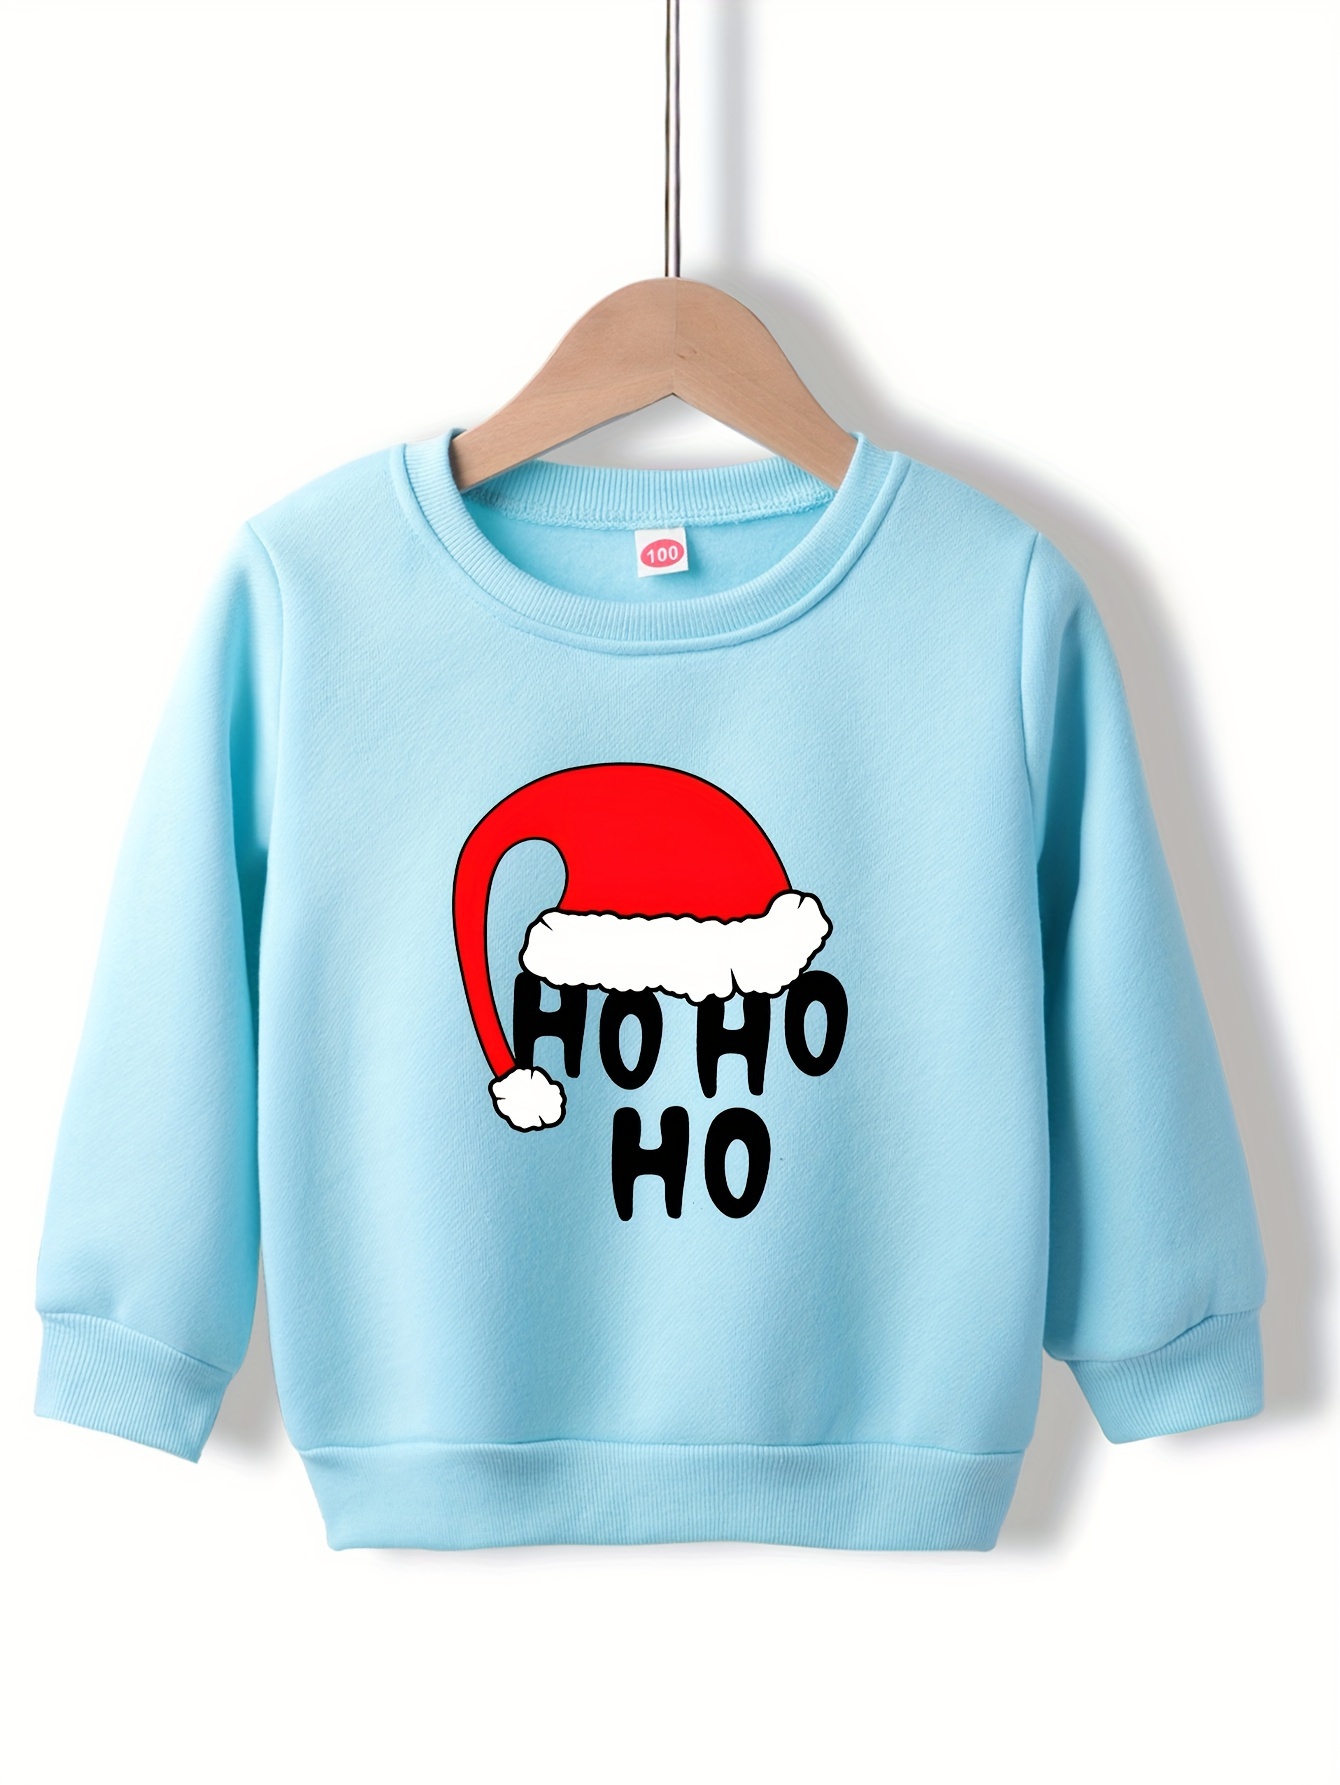 Camisola de Natal - HO HO HO